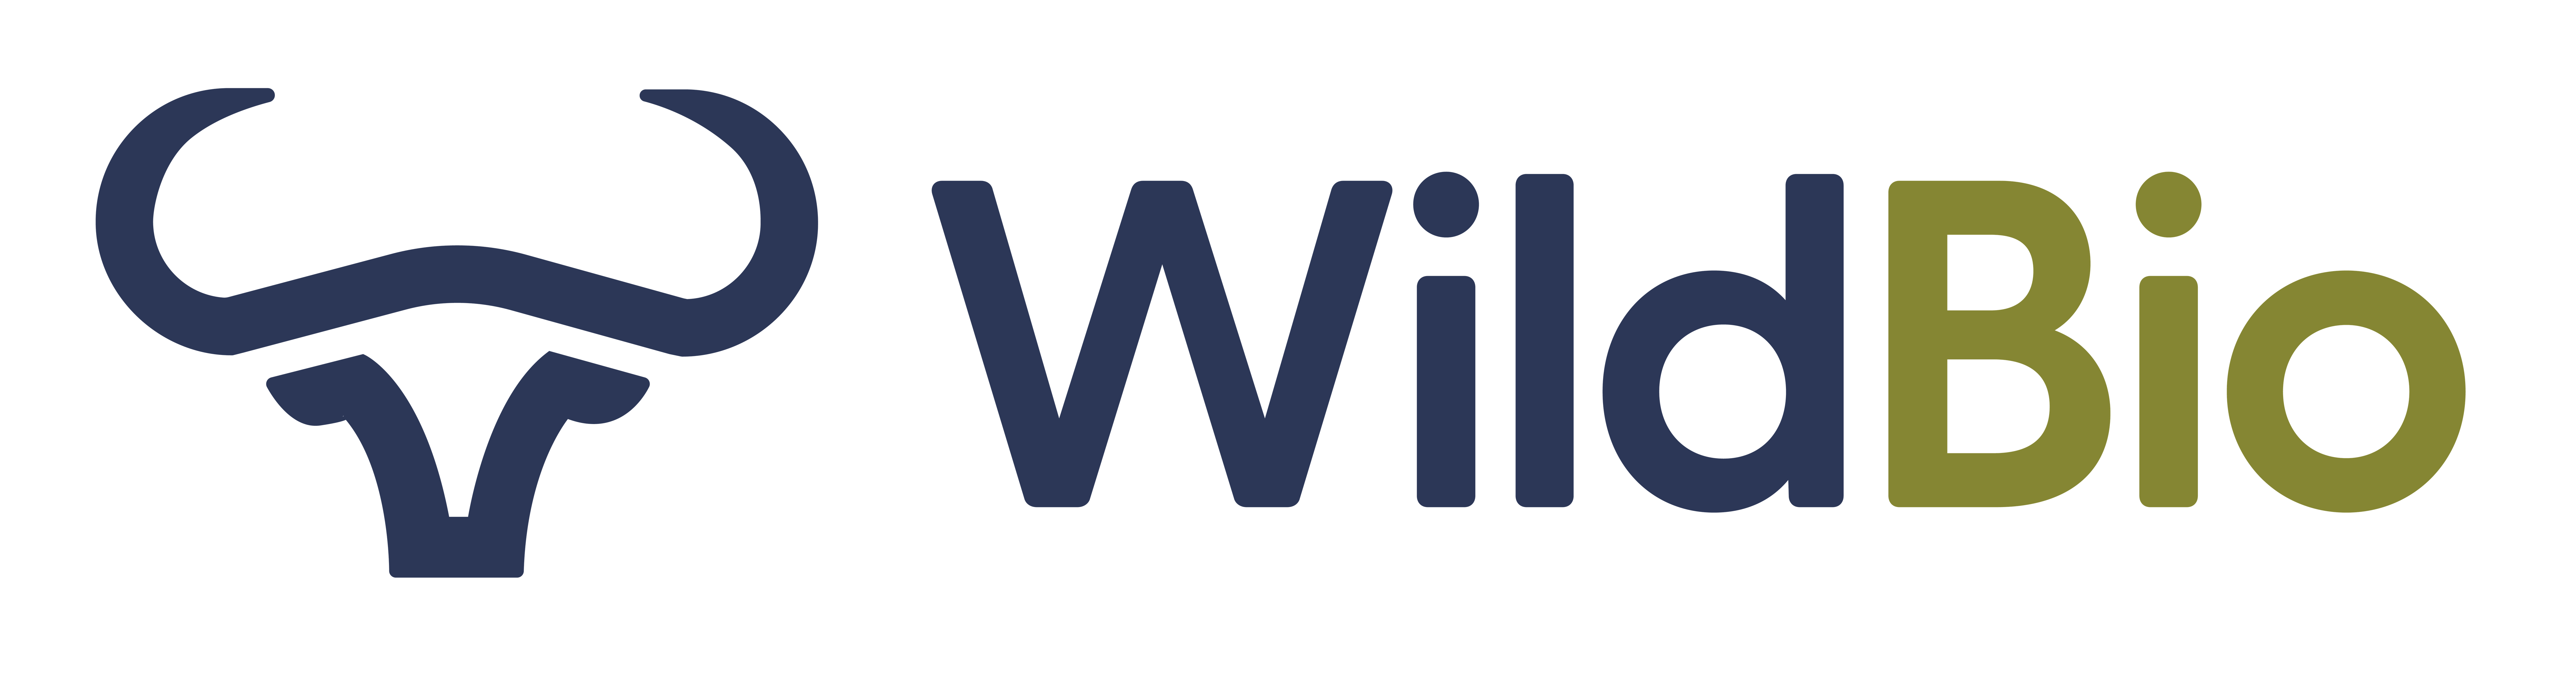 Wildbio logo with stylized African buffalo logo